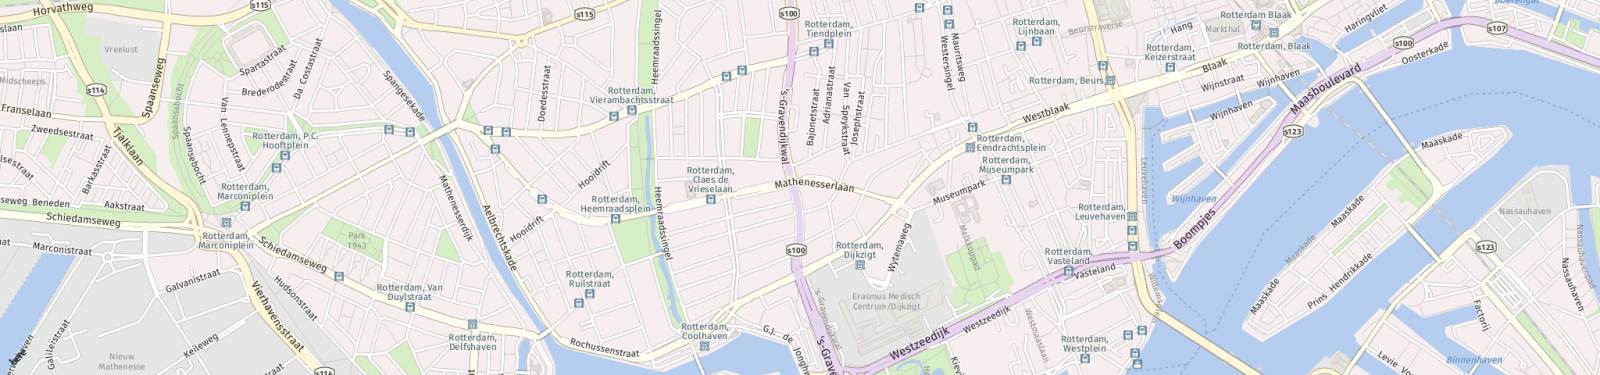 Kaart met locatie Appartement 's-Gravendijkwal